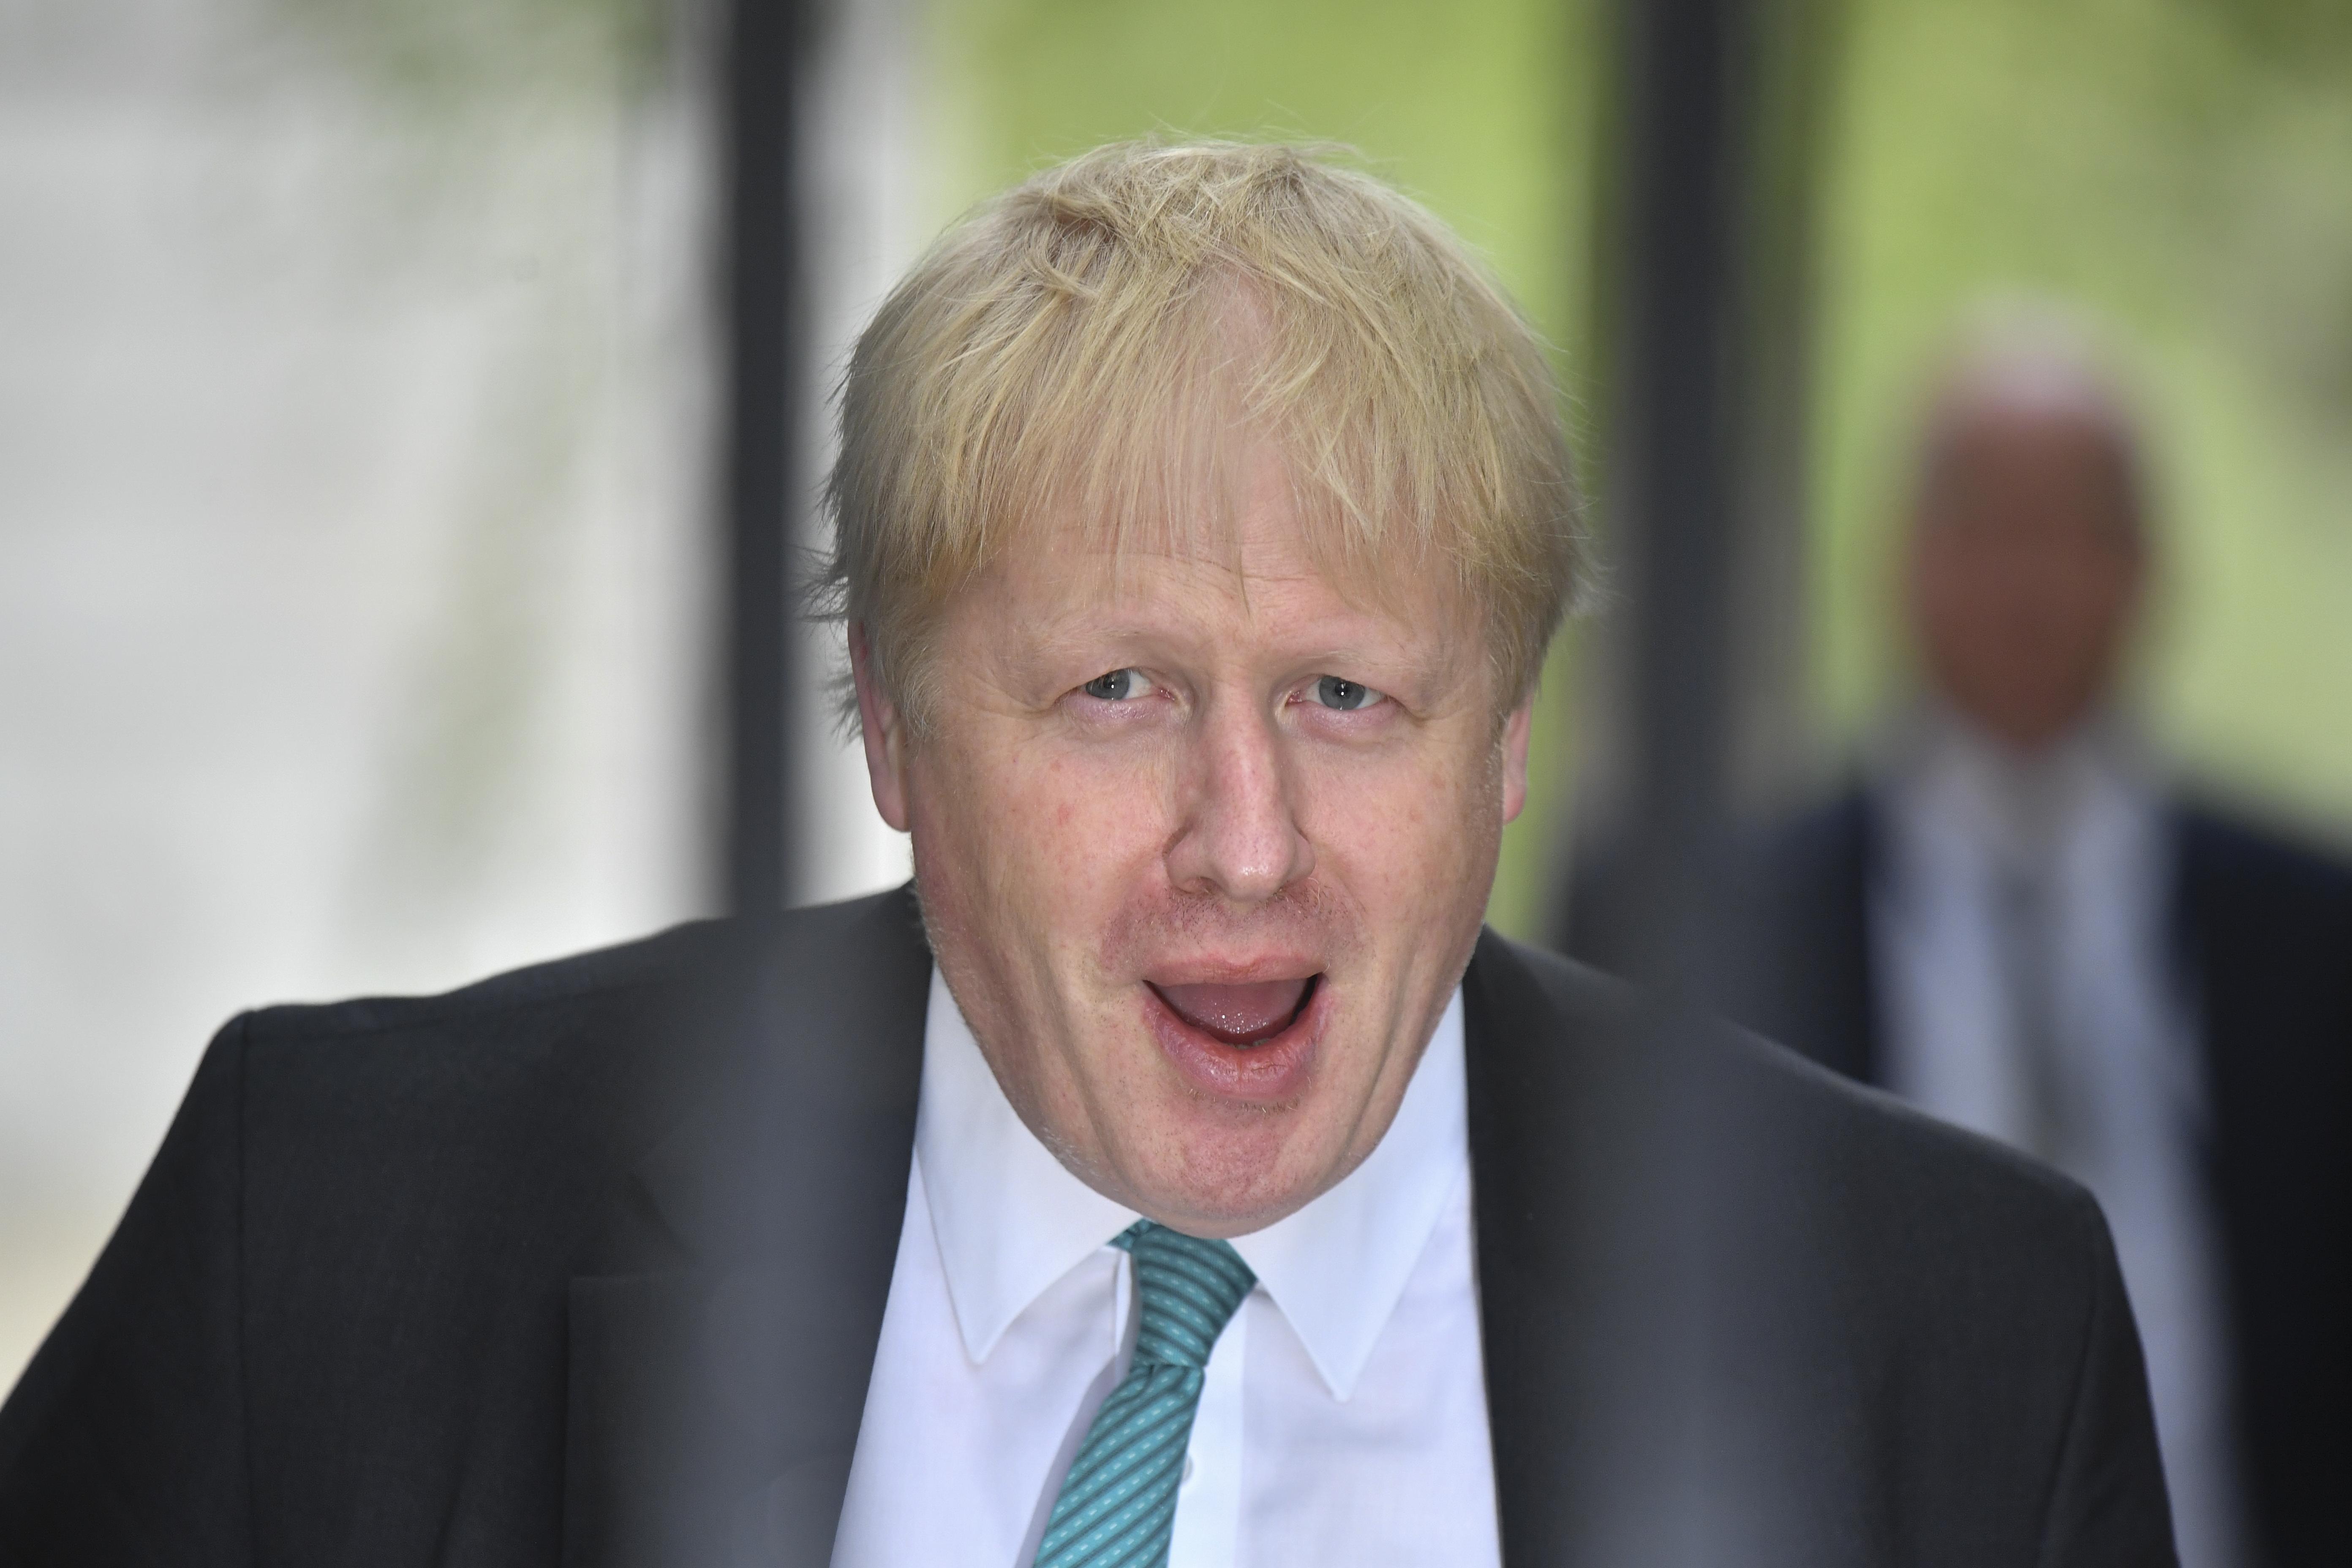 Hatte Ausweis nicht bei sich: Boris Johnson durfte nicht wählen